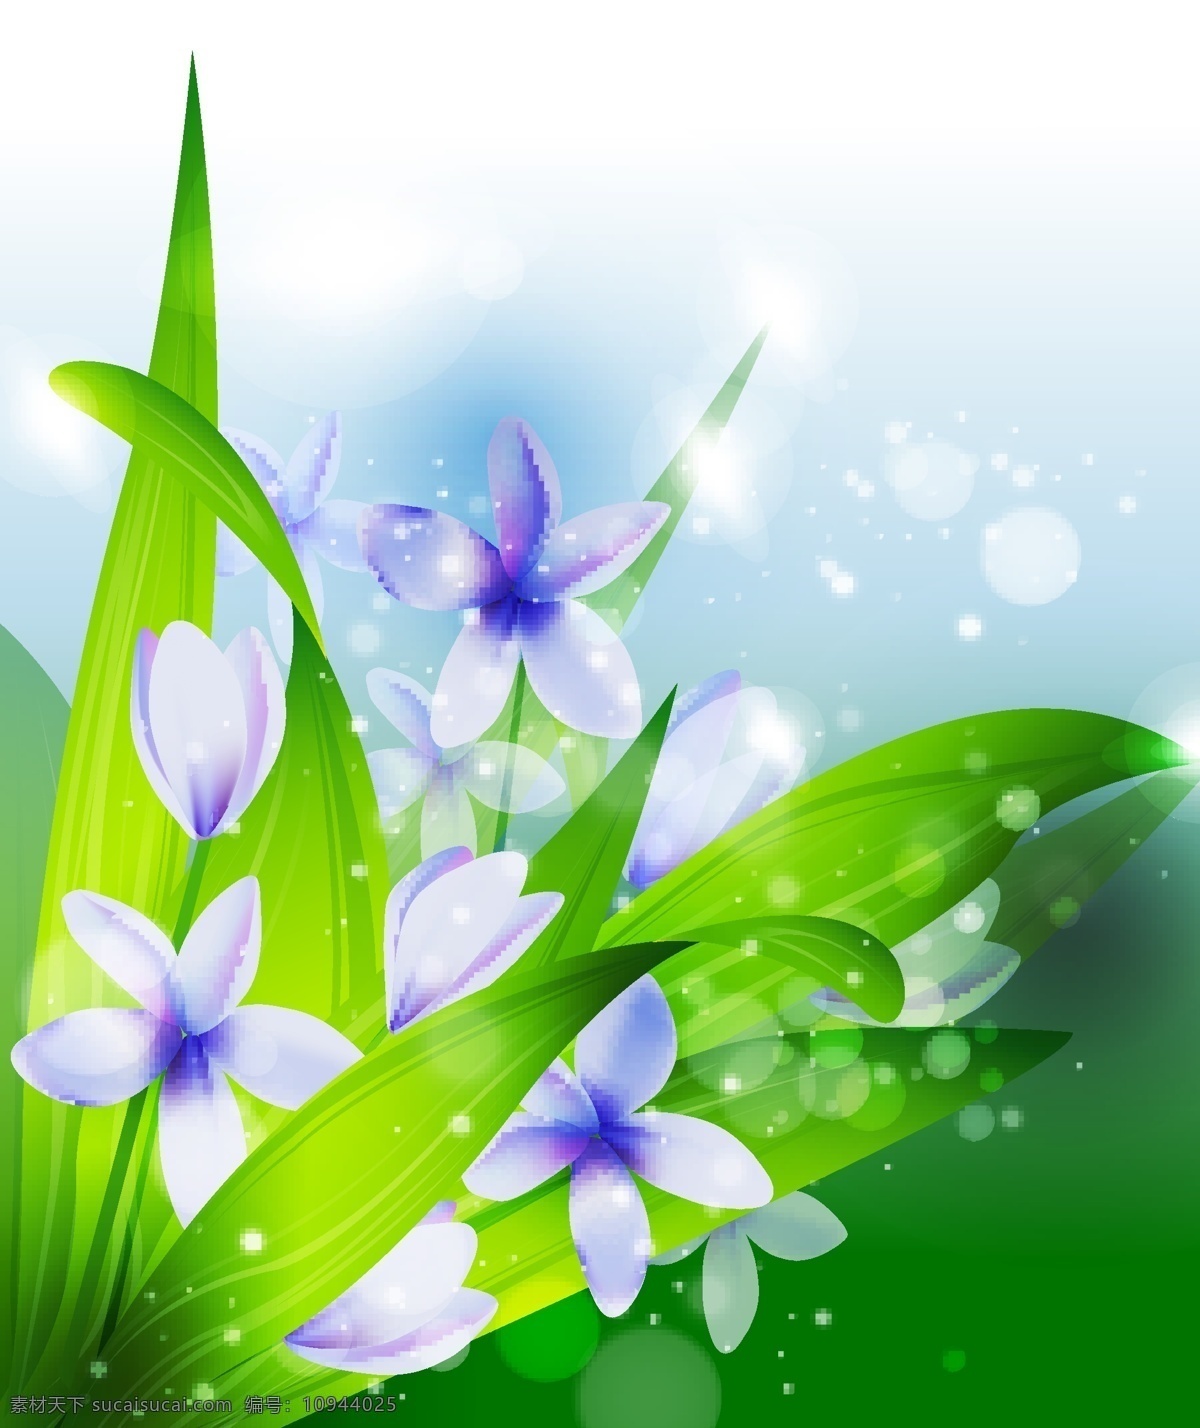 春意盎然 植物 背景 春色 春天 春意 花朵 绿叶 梦幻 矢量素材